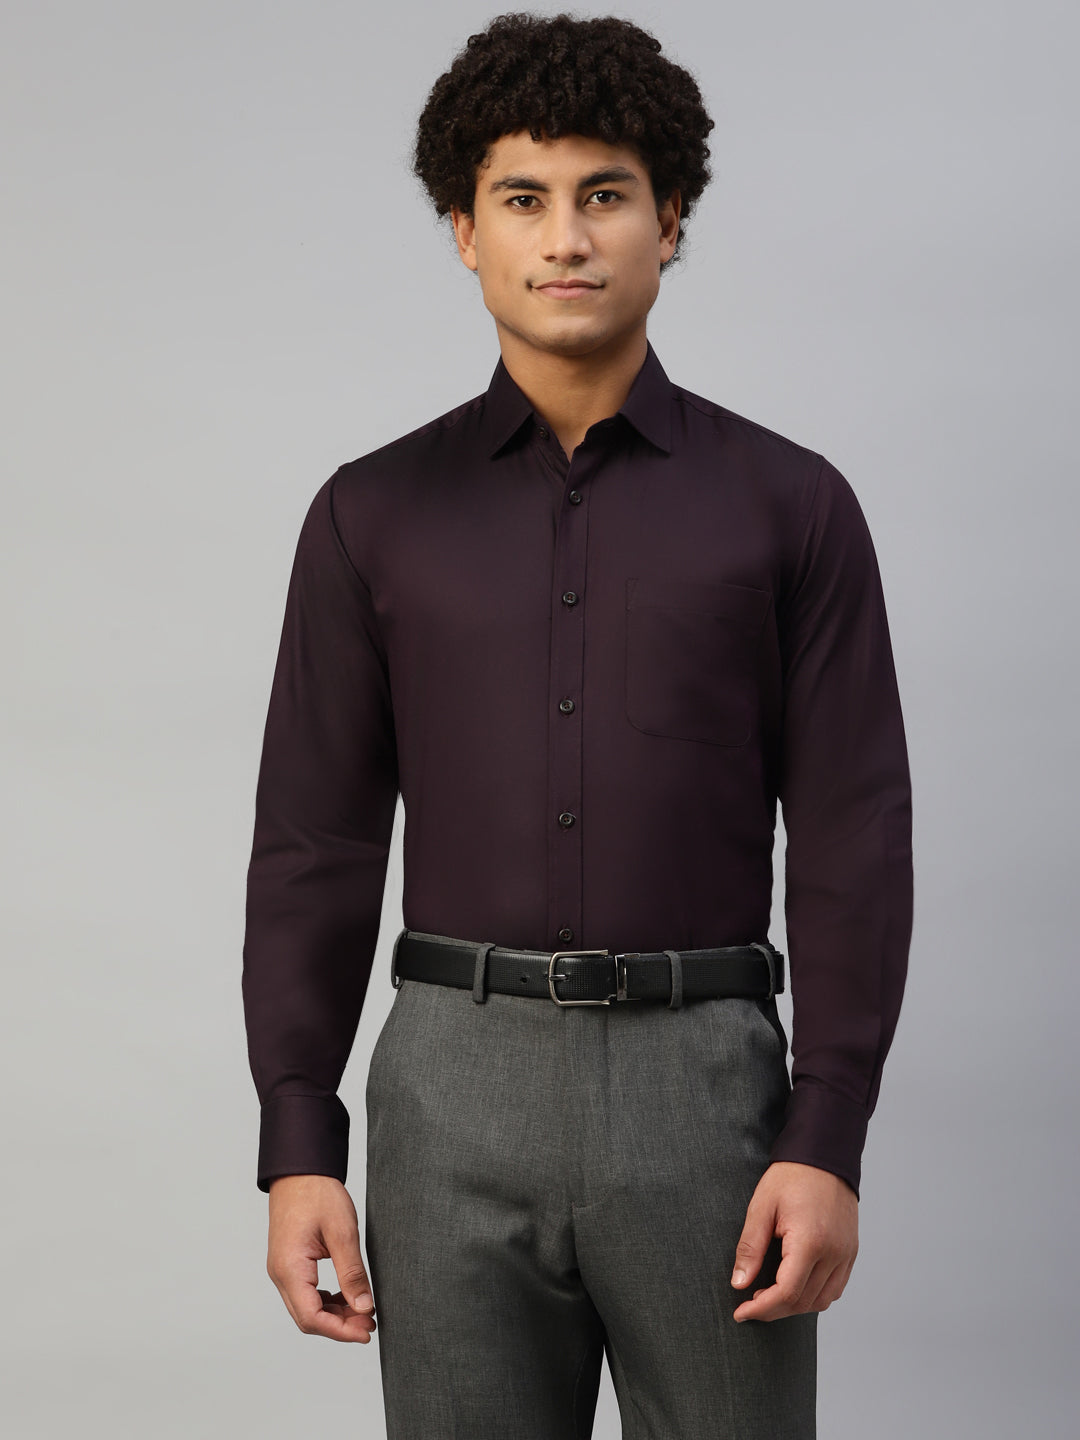 Don Vino Men's Solid Maroon Full Sleeve Regular Fit Shirt